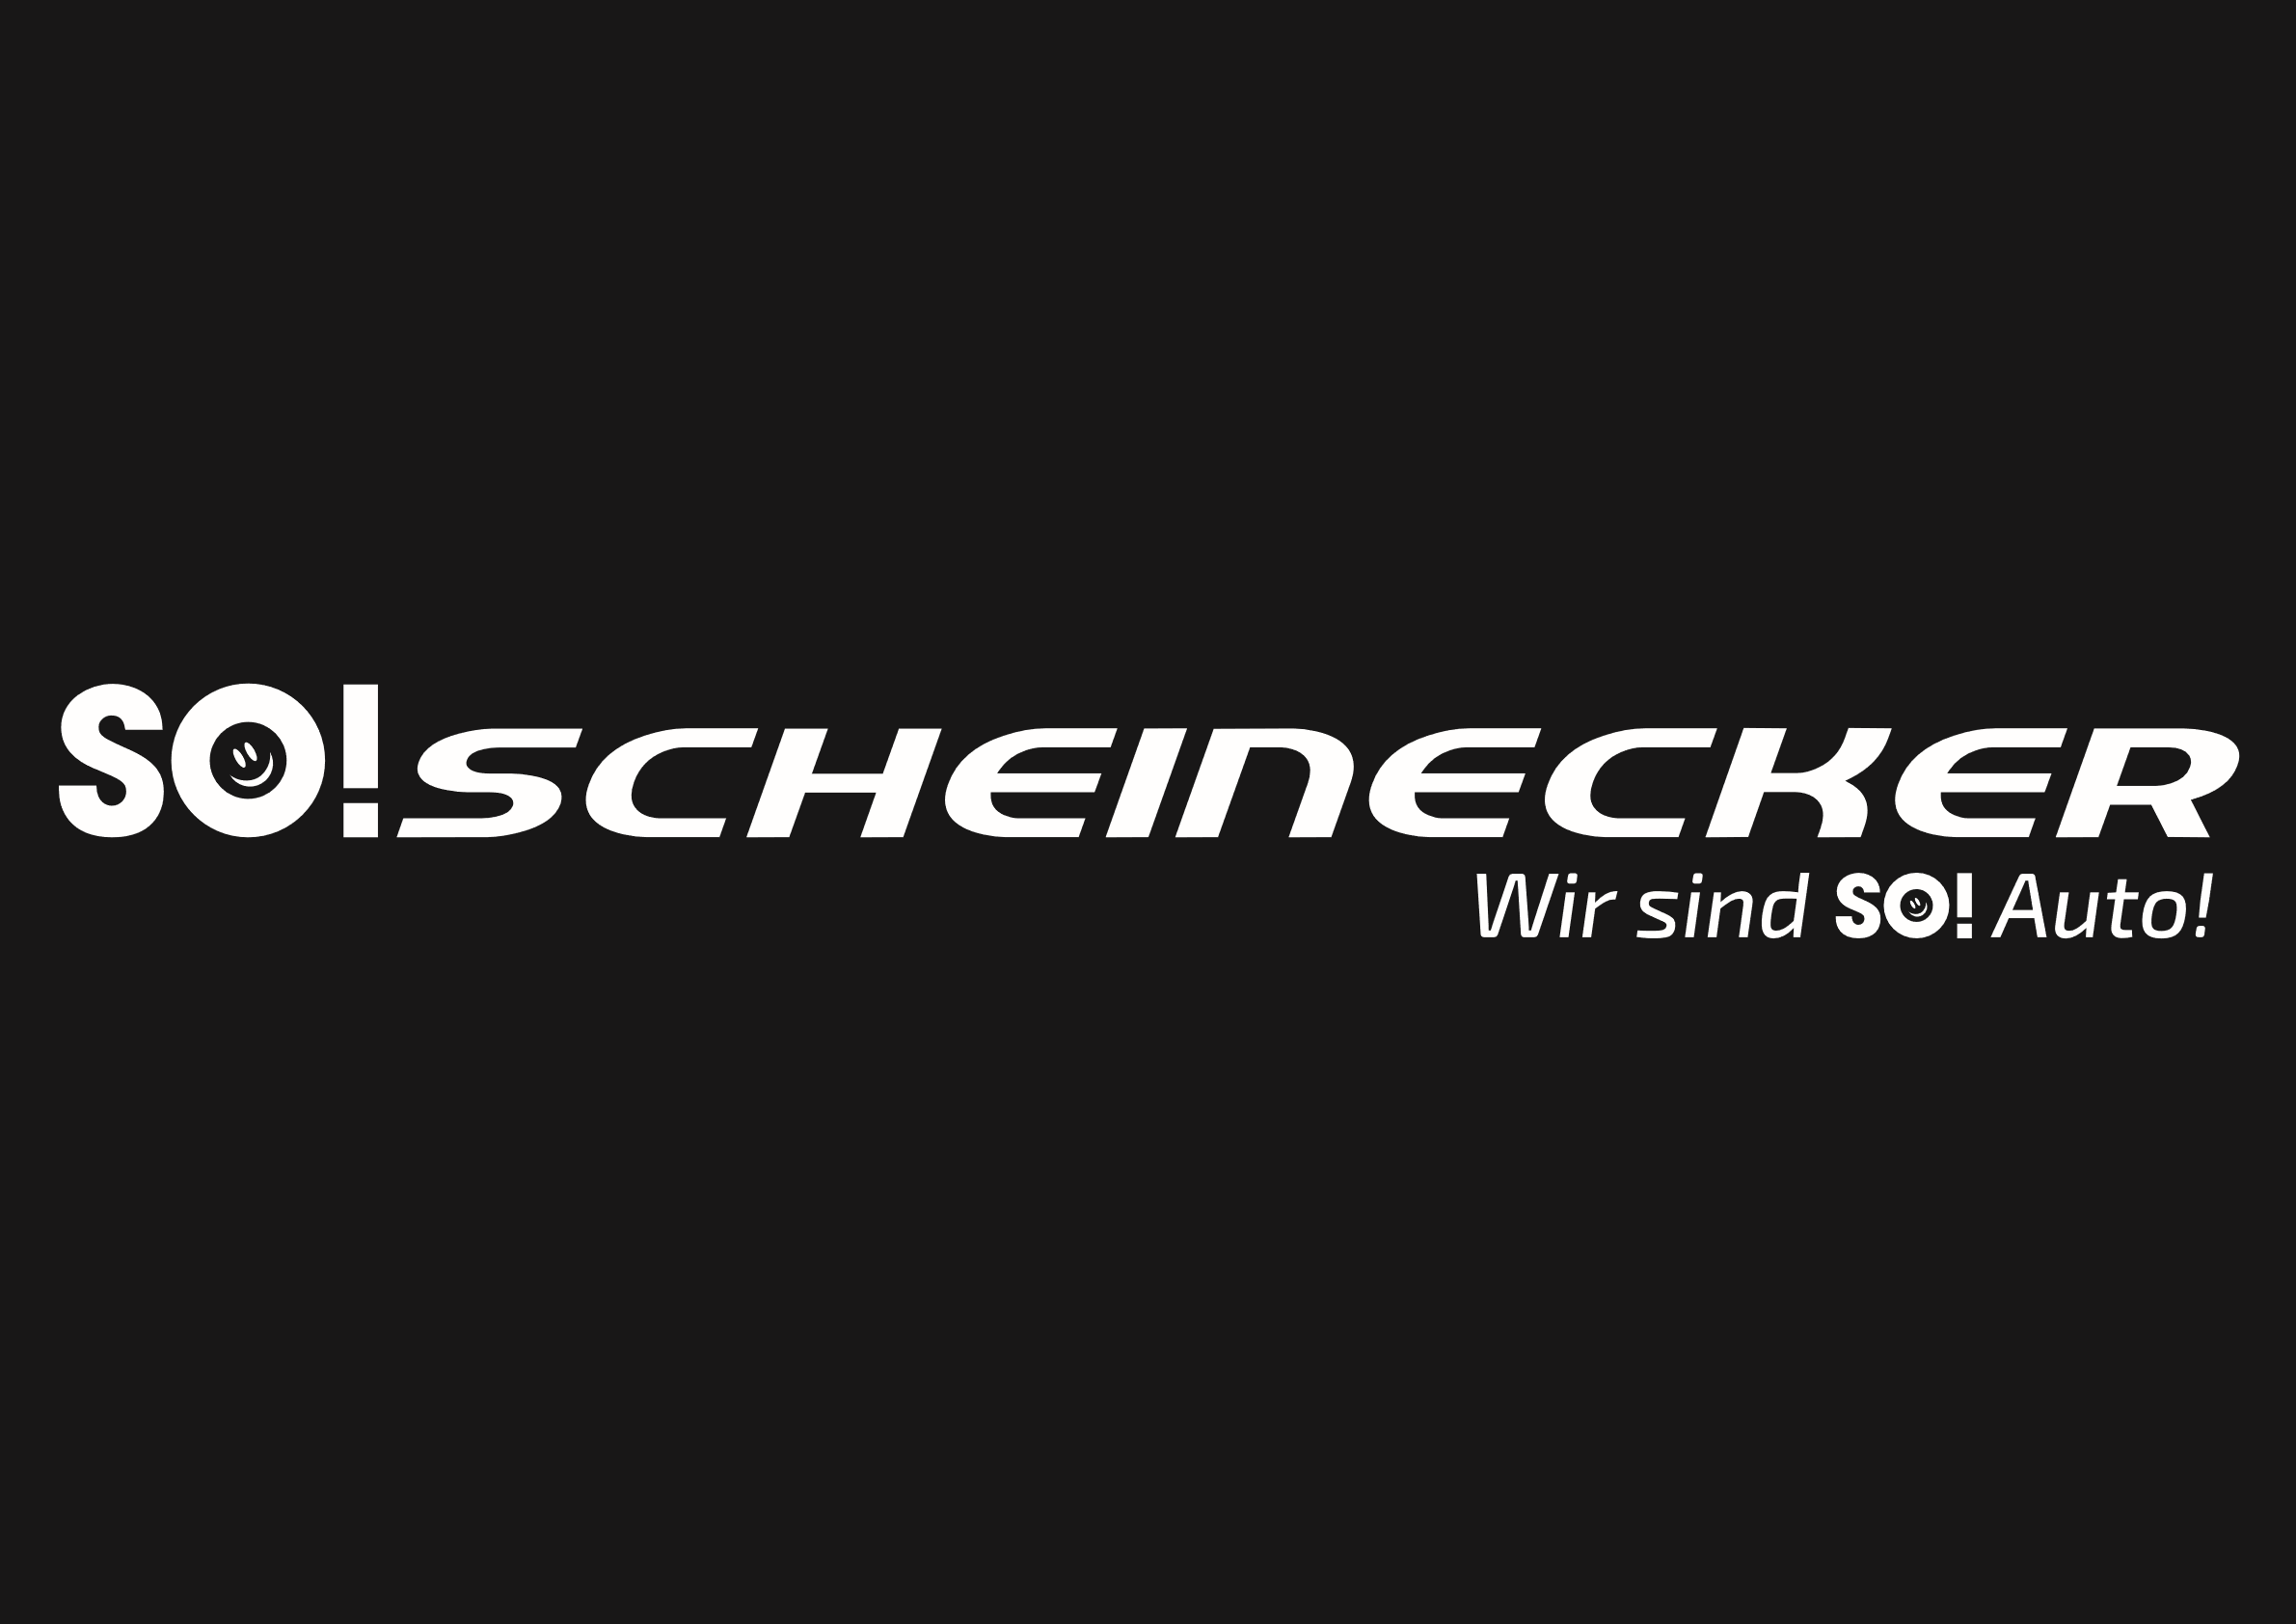 M. Scheinecker Gesellschaft m.b.H.